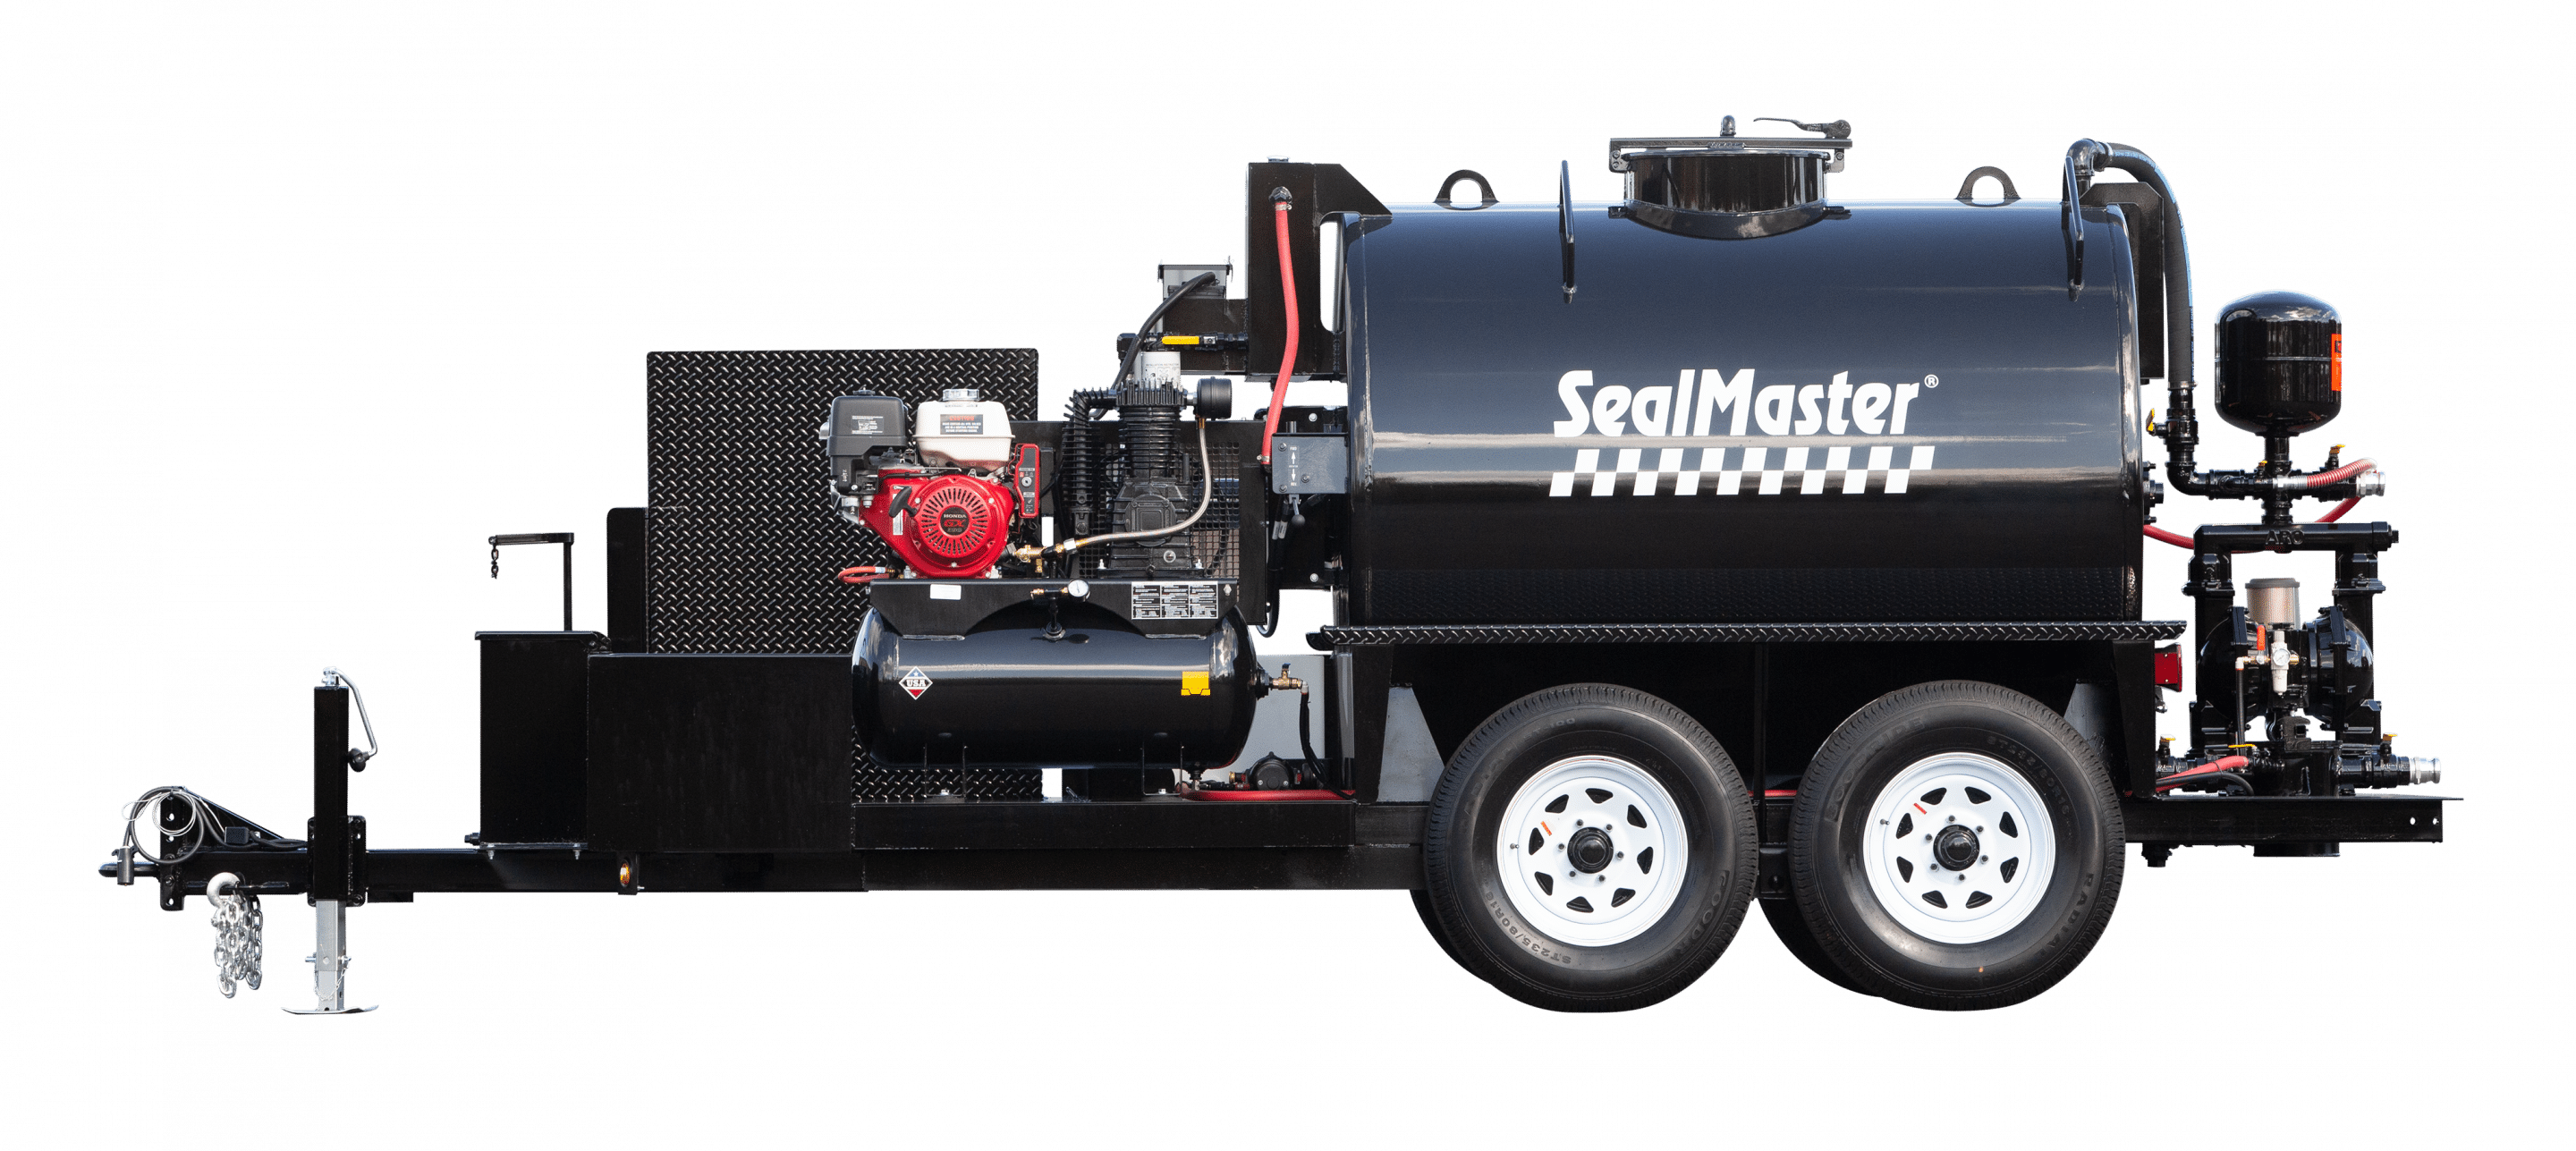 SealCoat spray System trailer, equipo de aerosol SealCoat, equipo de sealcoating, TR 575 SprayMaster trailer, SealMaster